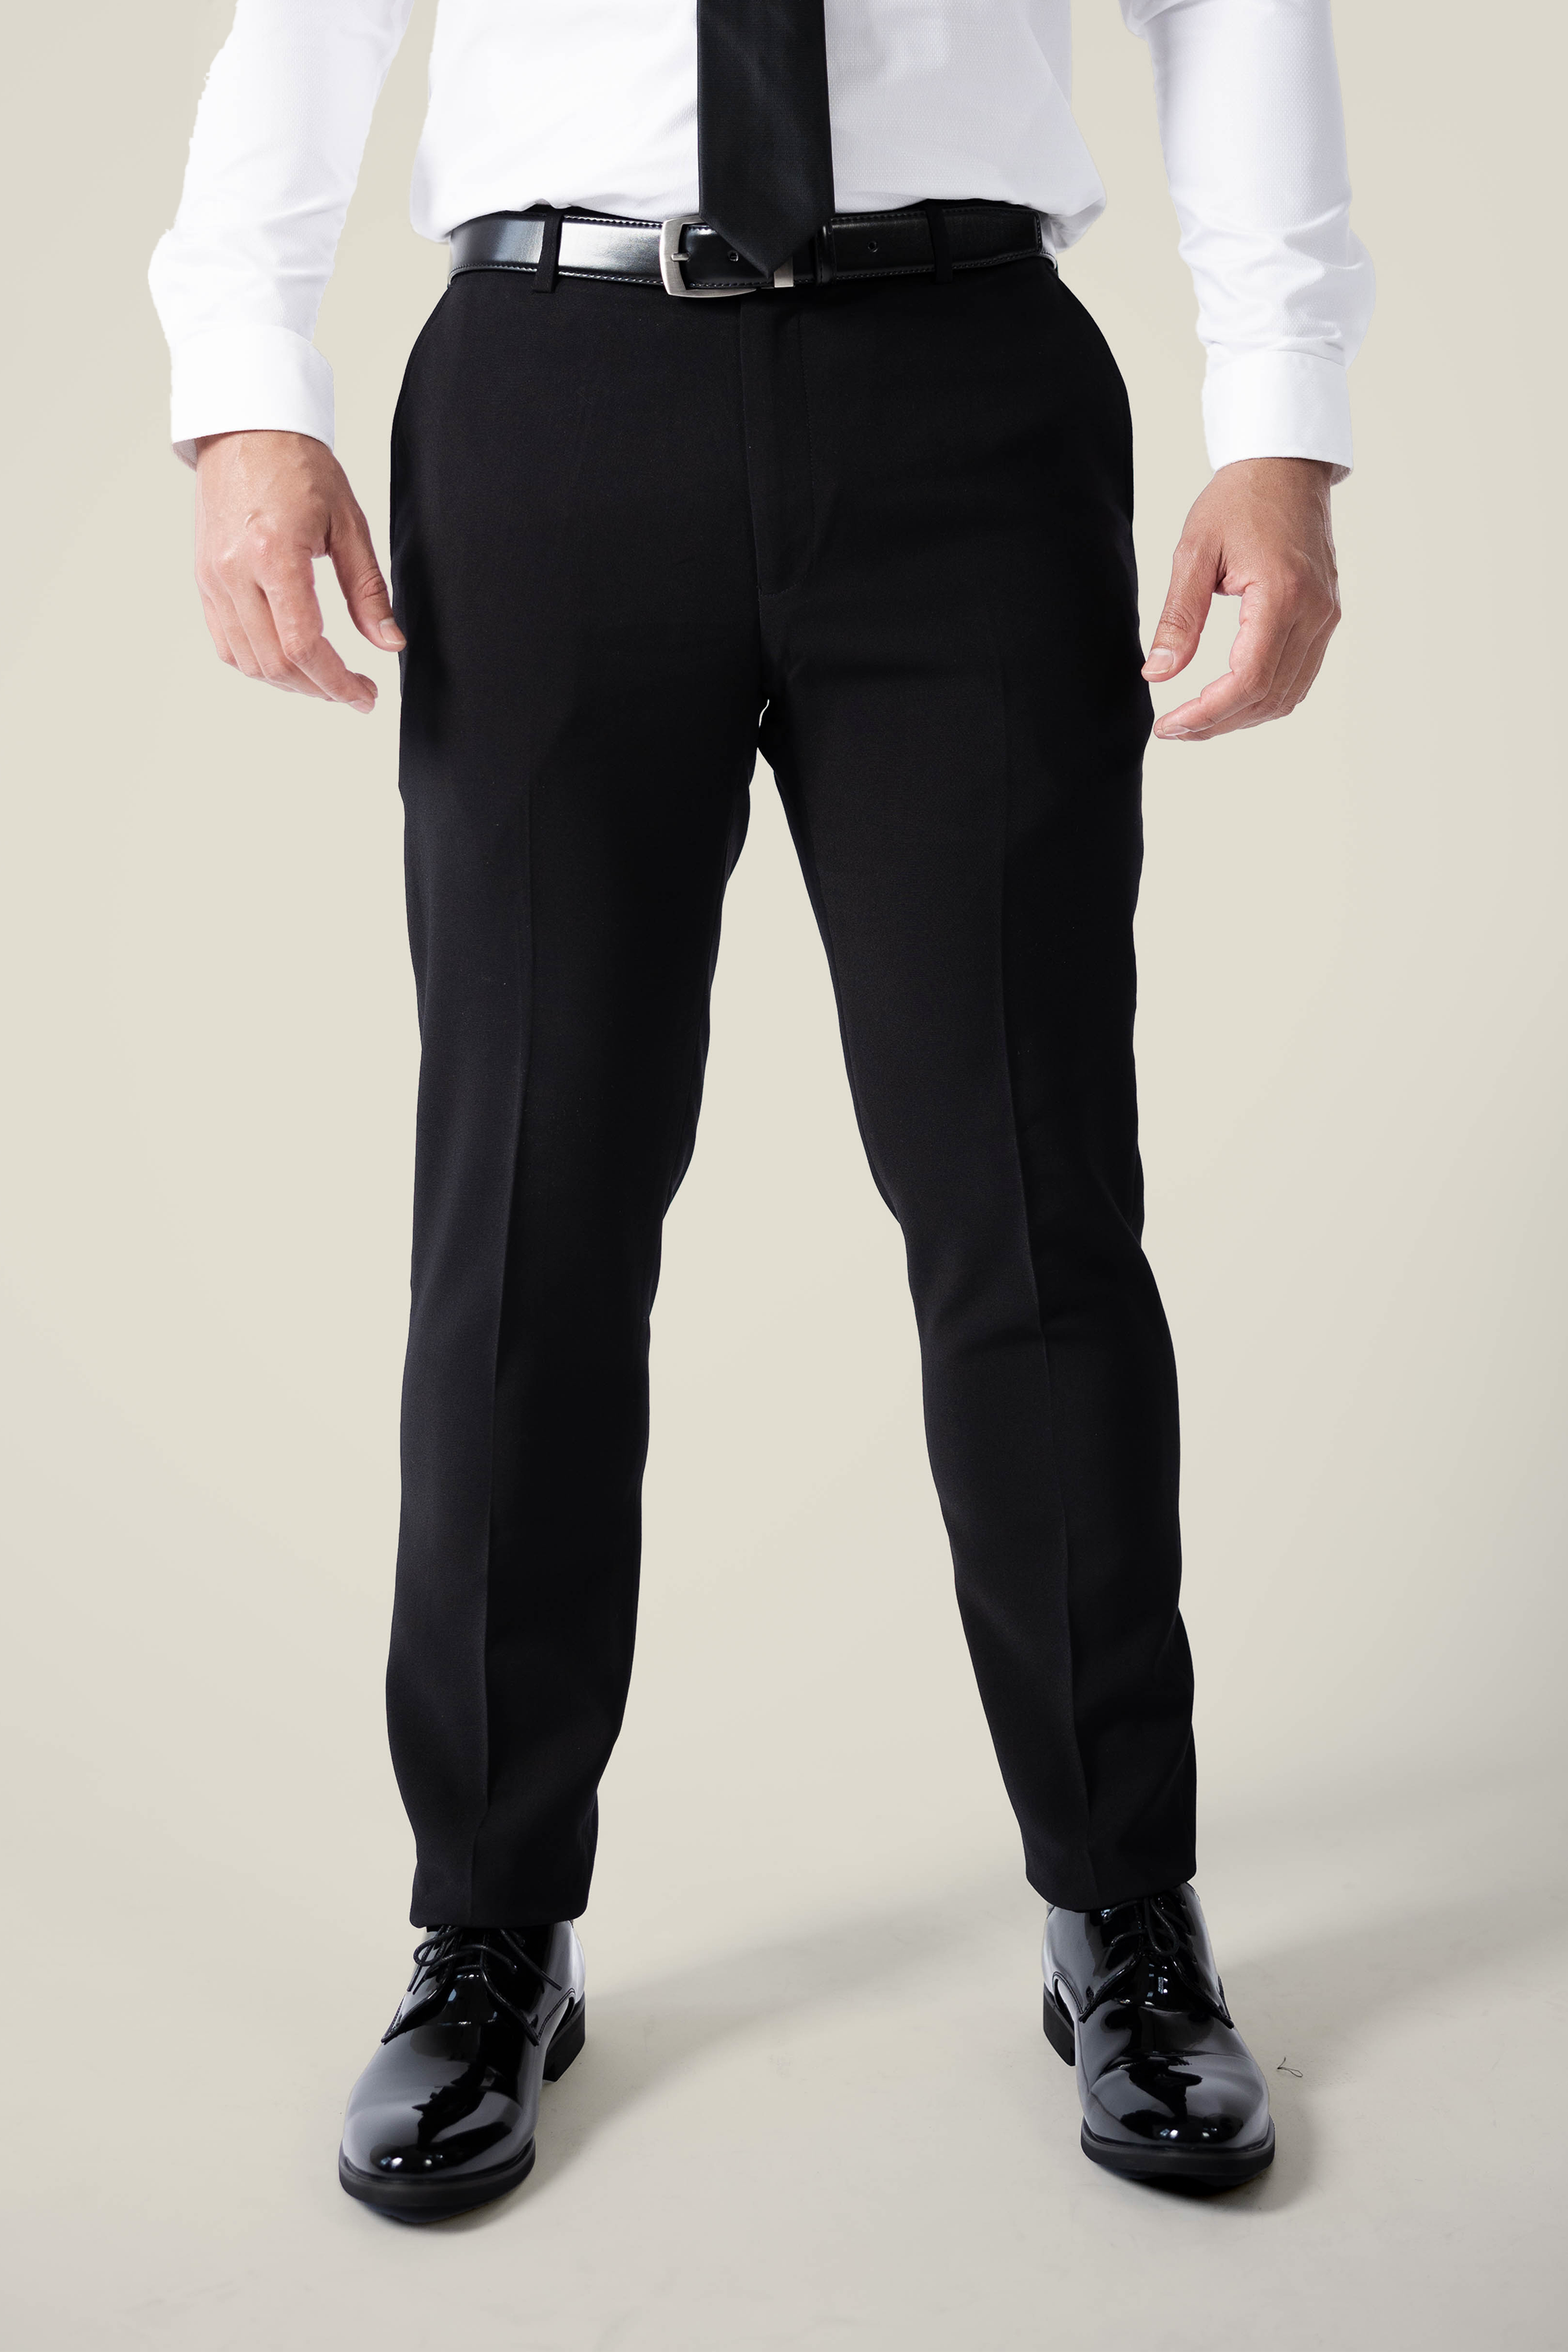 Grey Suits  Buy Grey Suits Online  Myntra